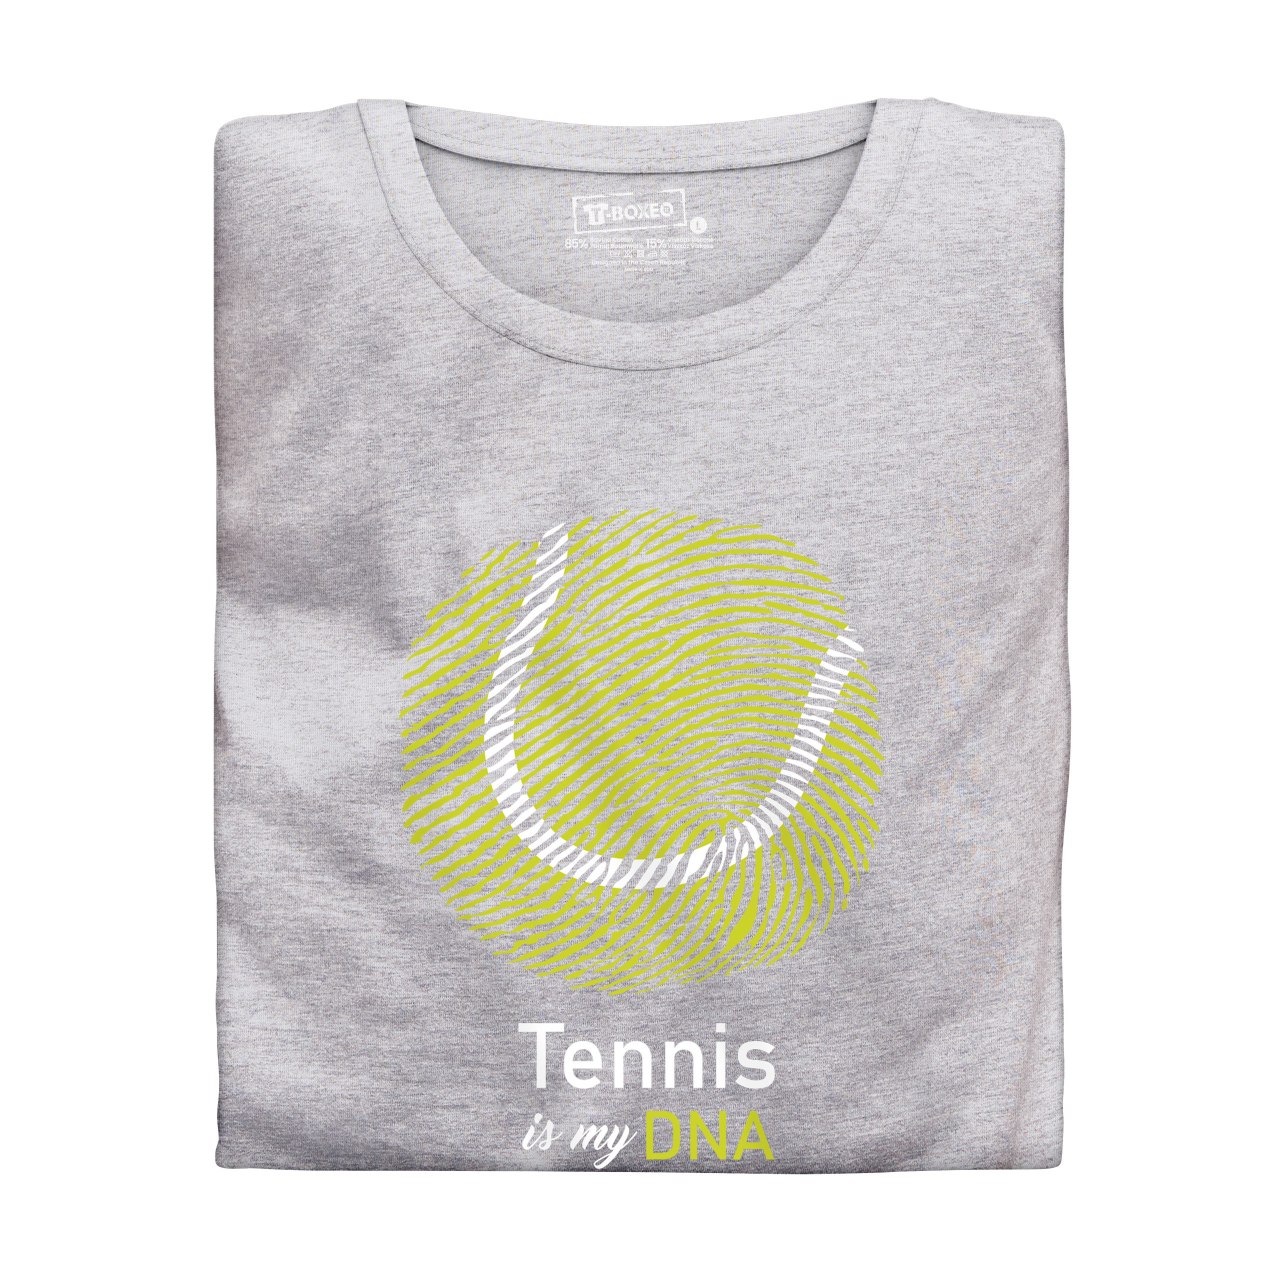 Dámské tričko s potiskem "Tennis is my DNA"